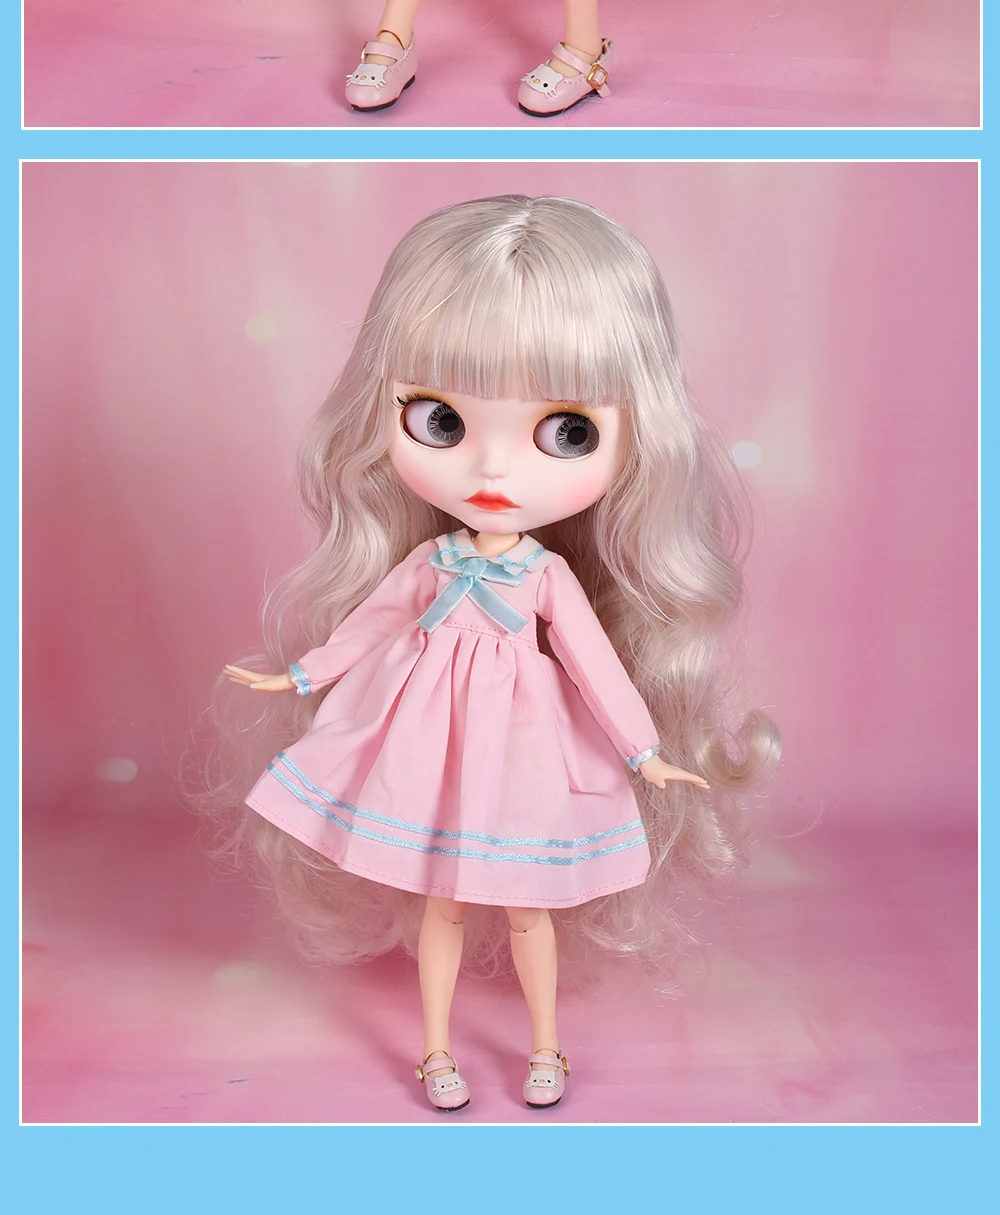 12" Blythe Doll Factory Blythe's Lovely Outfits-Pink Princess Dress